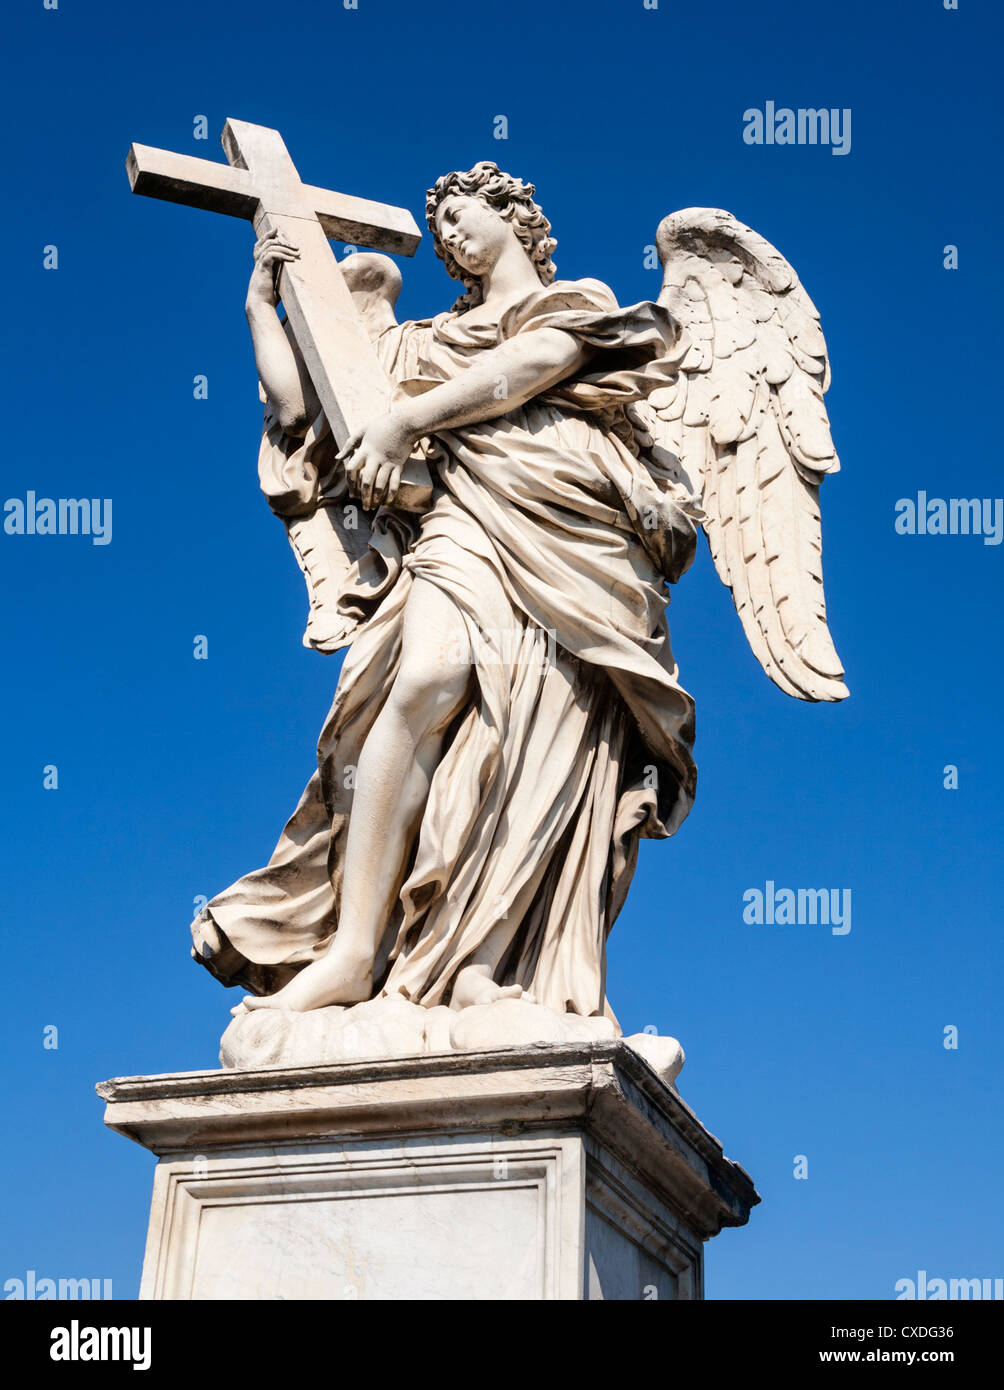 Einer von Berninis Engeln auf der Ponte Sant'Angelo, die Brücke über den Tiber zu Castel Sant'Angelo, Rom, Italien. Stockfoto